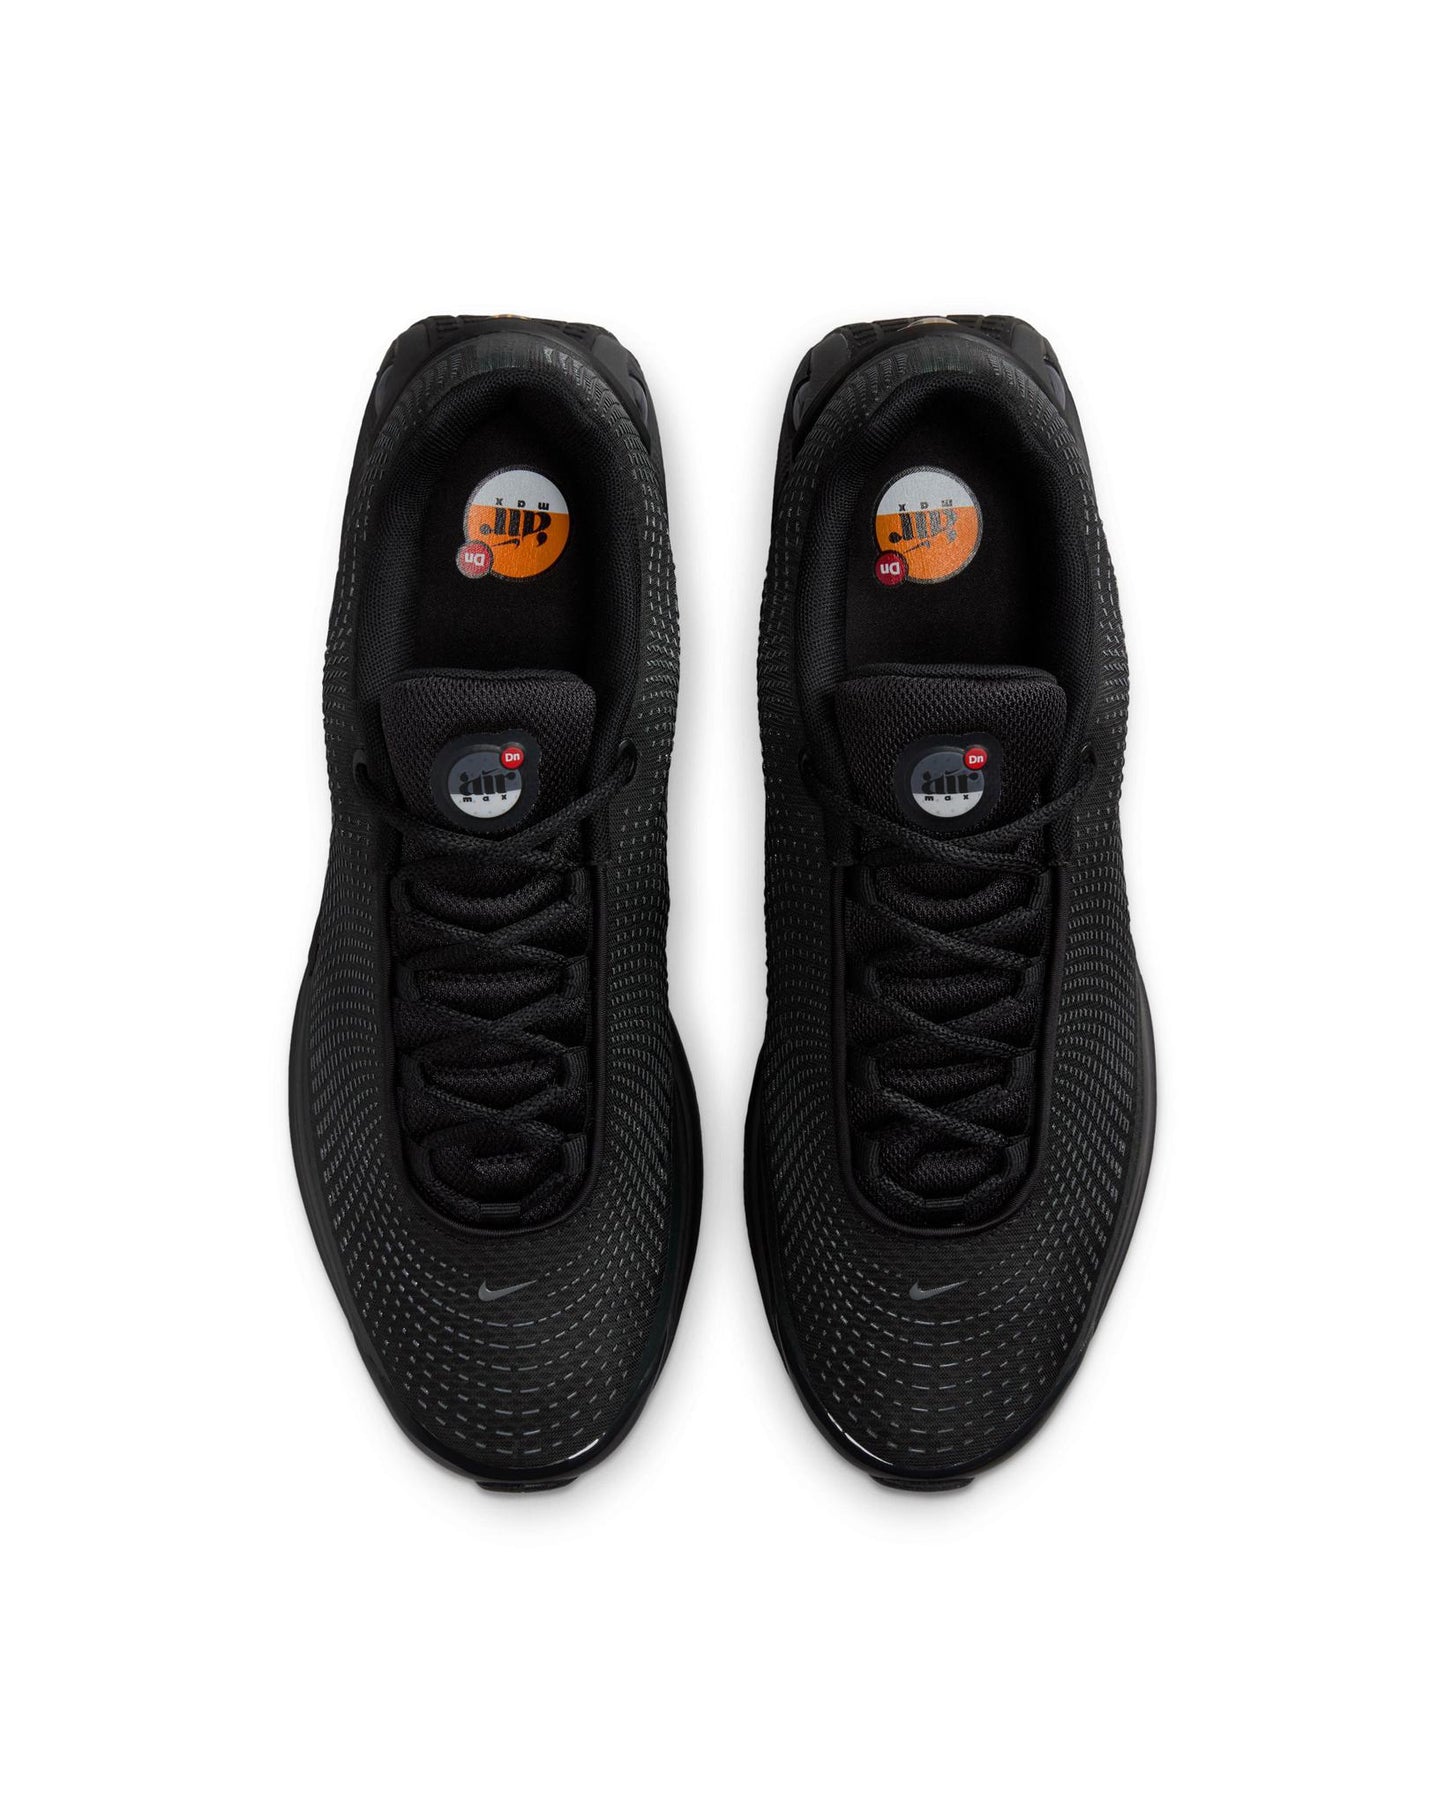 
                    
                      Nike Air Max Dn "Black"
                    
                  